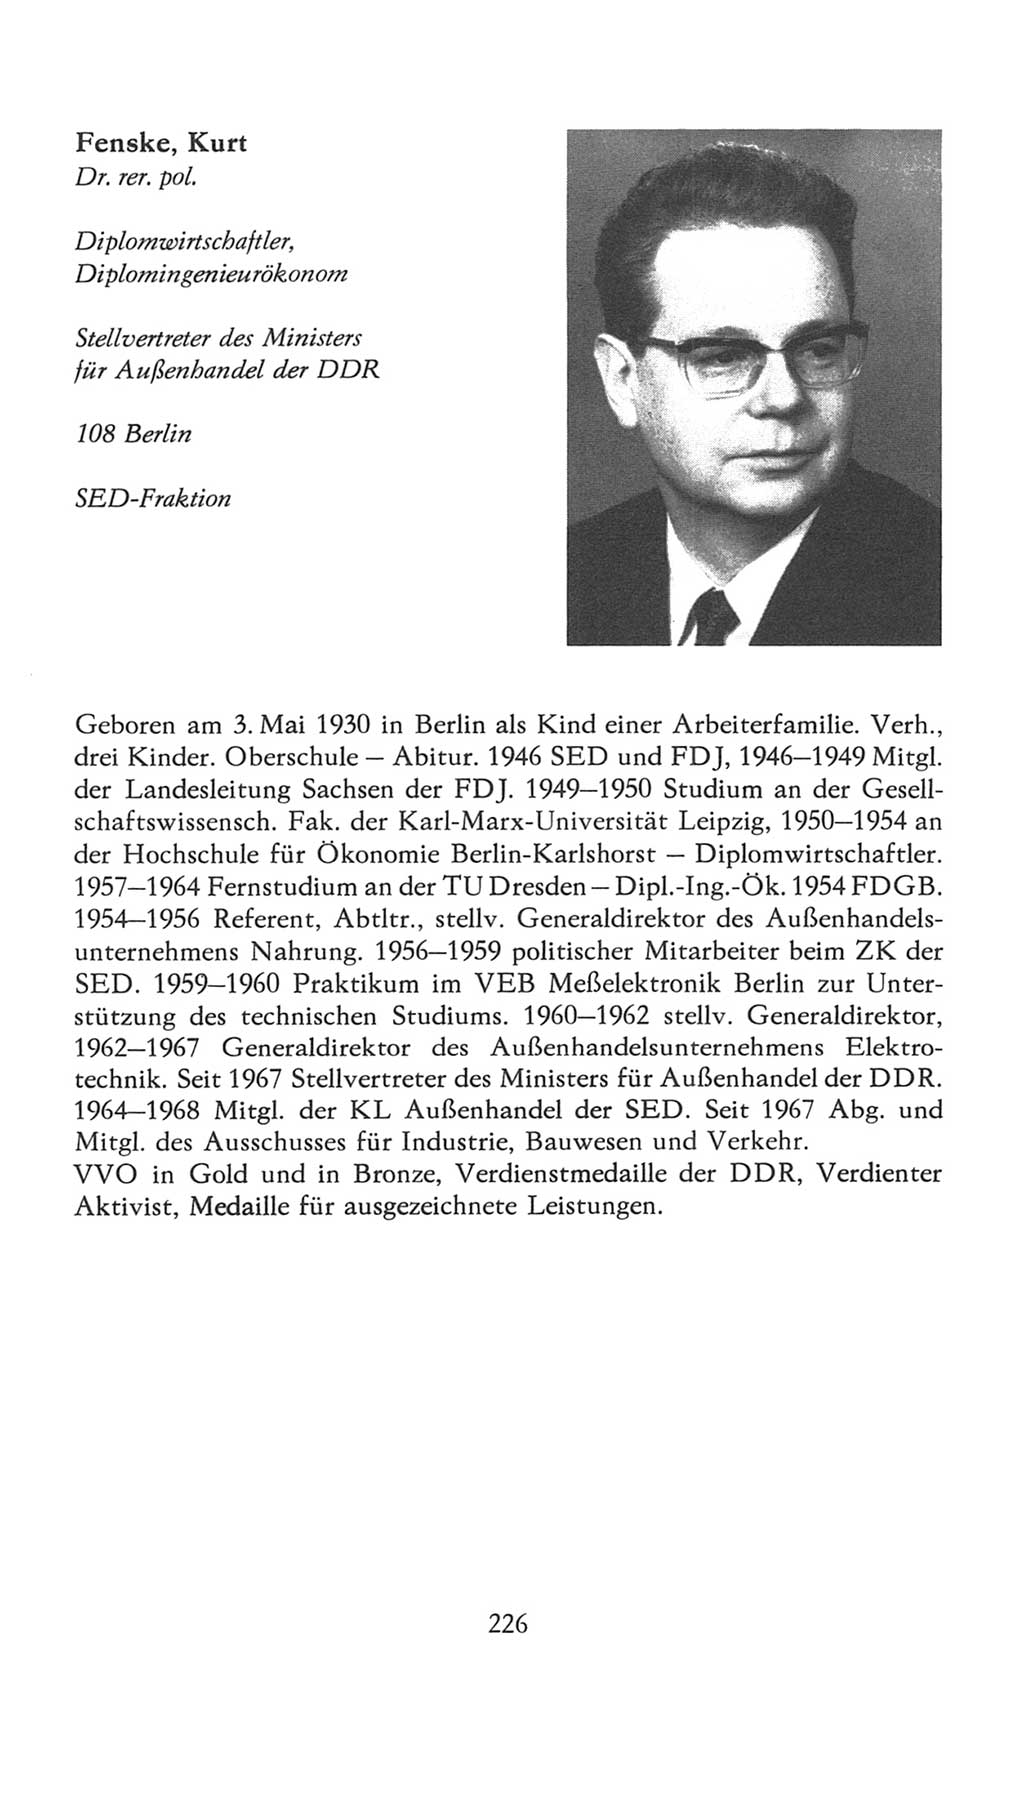 Volkskammer (VK) der Deutschen Demokratischen Republik (DDR), 7. Wahlperiode 1976-1981, Seite 226 (VK. DDR 7. WP. 1976-1981, S. 226)